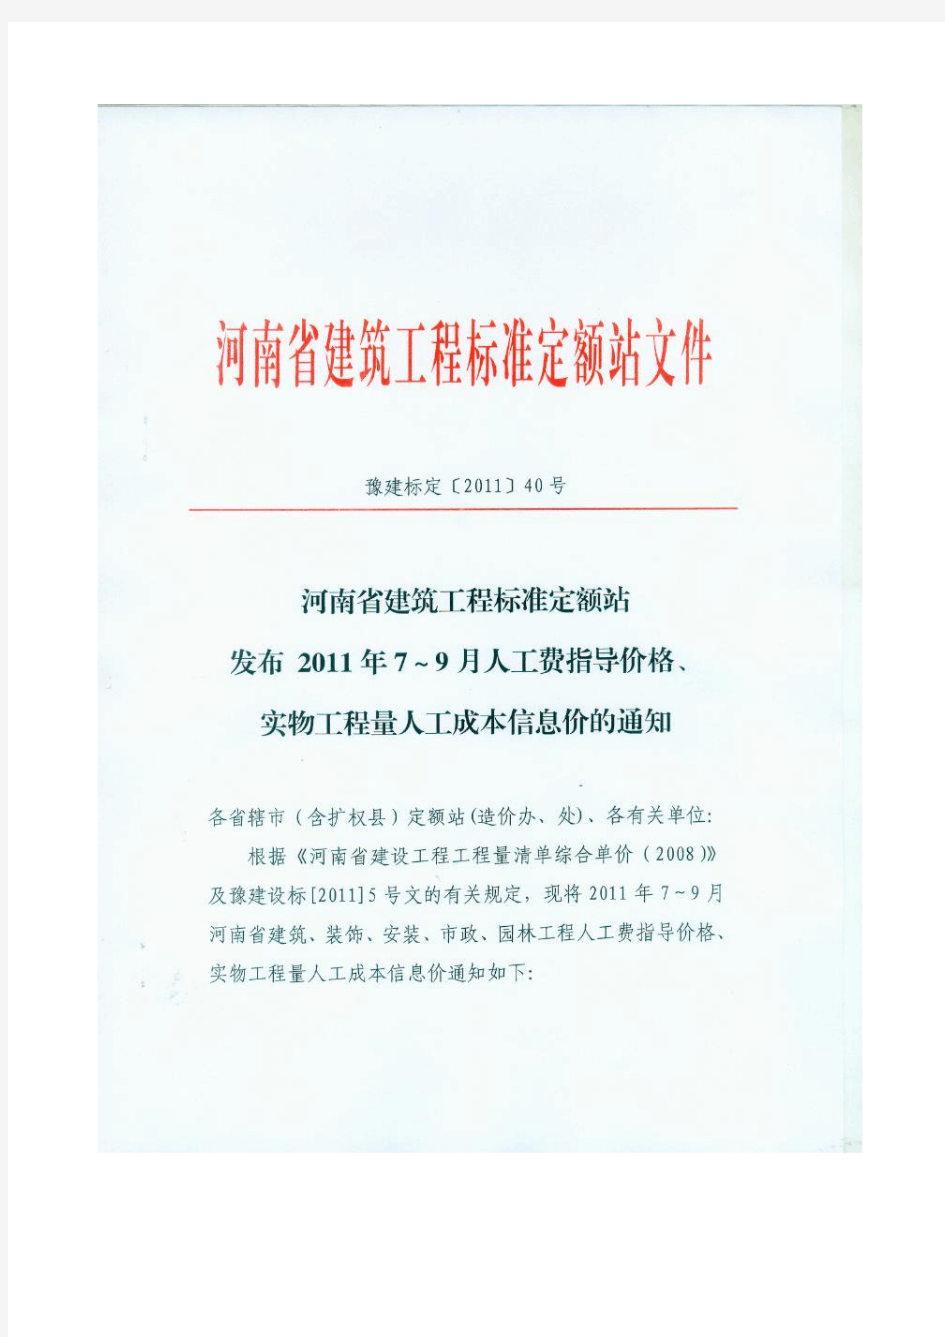 河南省建筑工程标准定额站发布2011年7～9月人工费指导价格、实物工程量人工成本信息价的通知